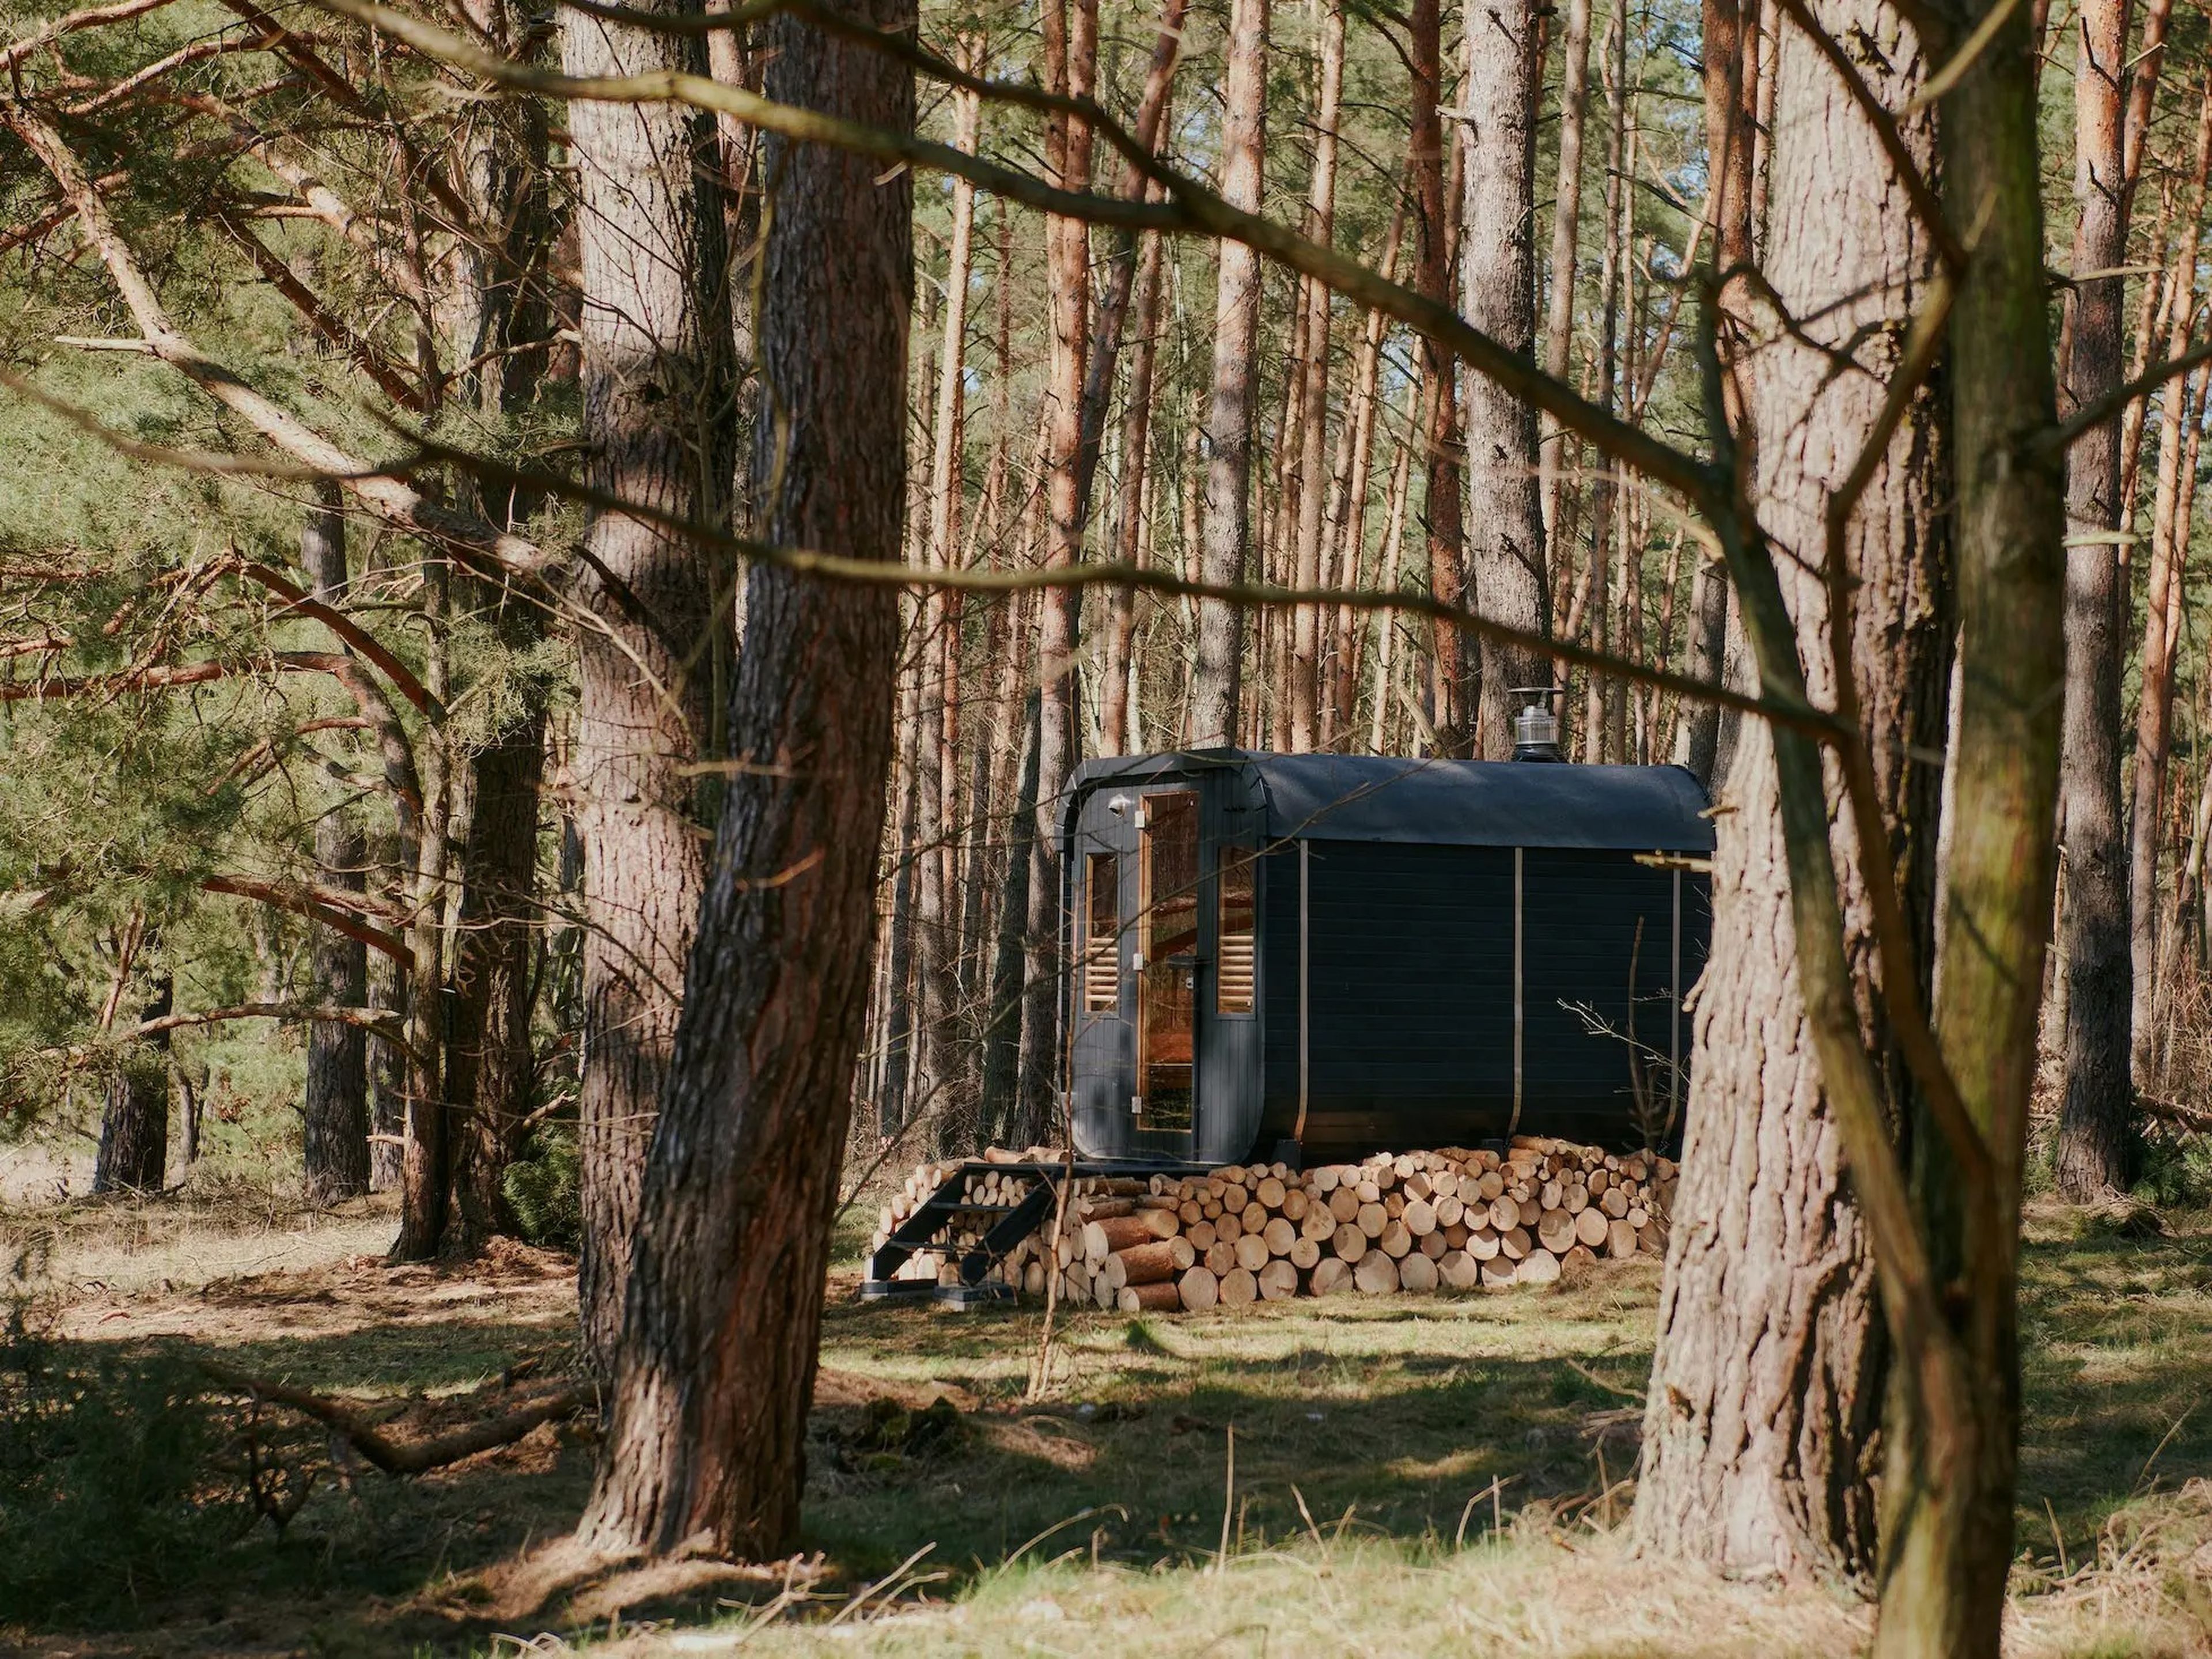 Una cabaña de Raus en la naturaleza, rodeada de densos y altos árboles.